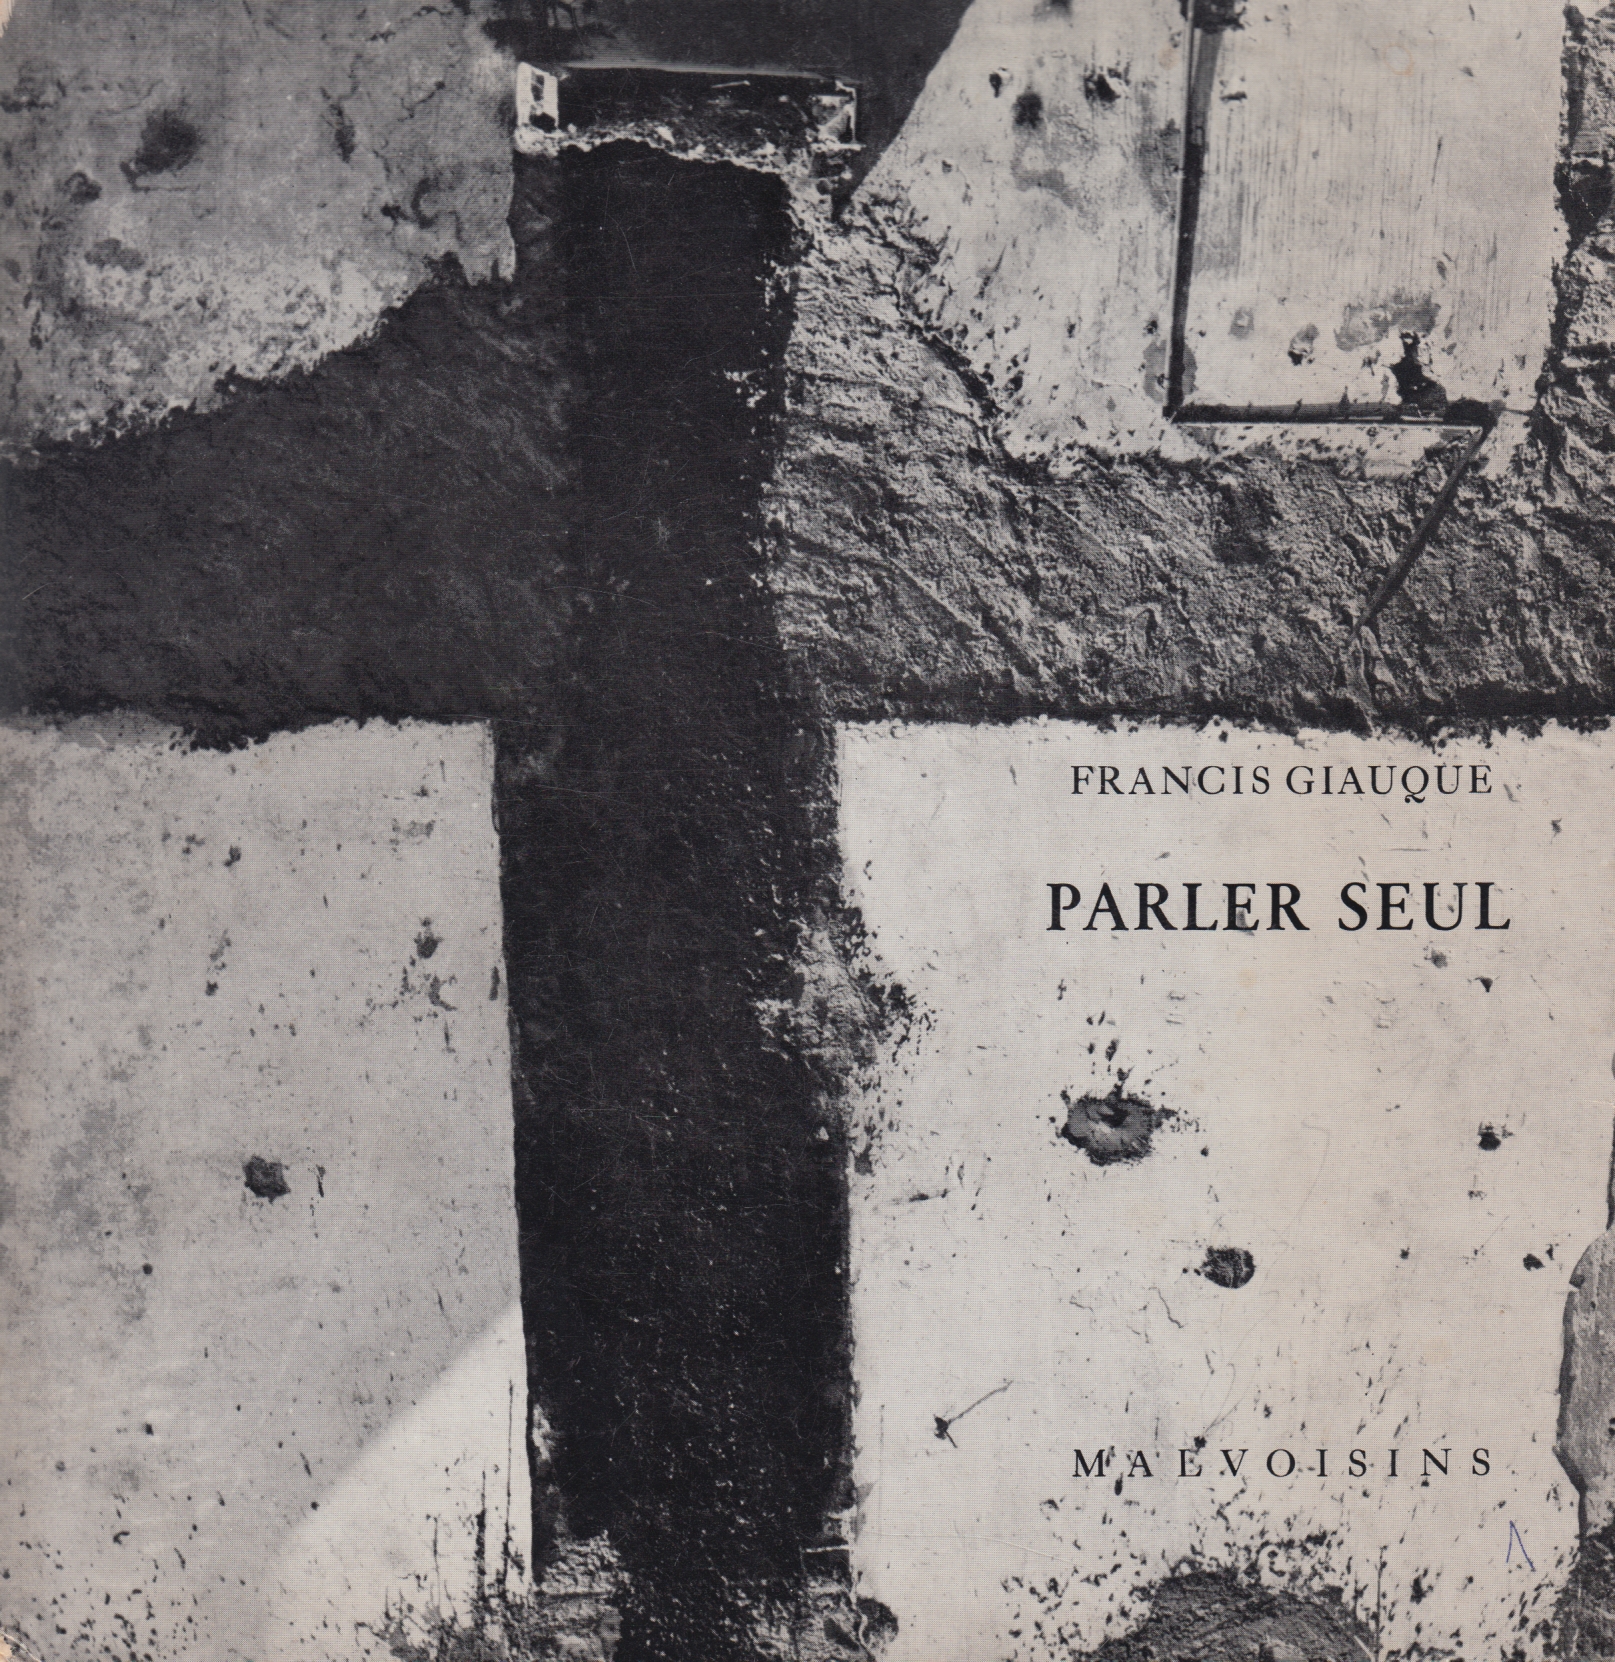 Cover von Tristan Solier für die schöne Ausgabe von Parler seul, gefolgt von L’Ombre et la nuit, erschienen 1969 in Pruntrut in den Éditions des Malvoisins.